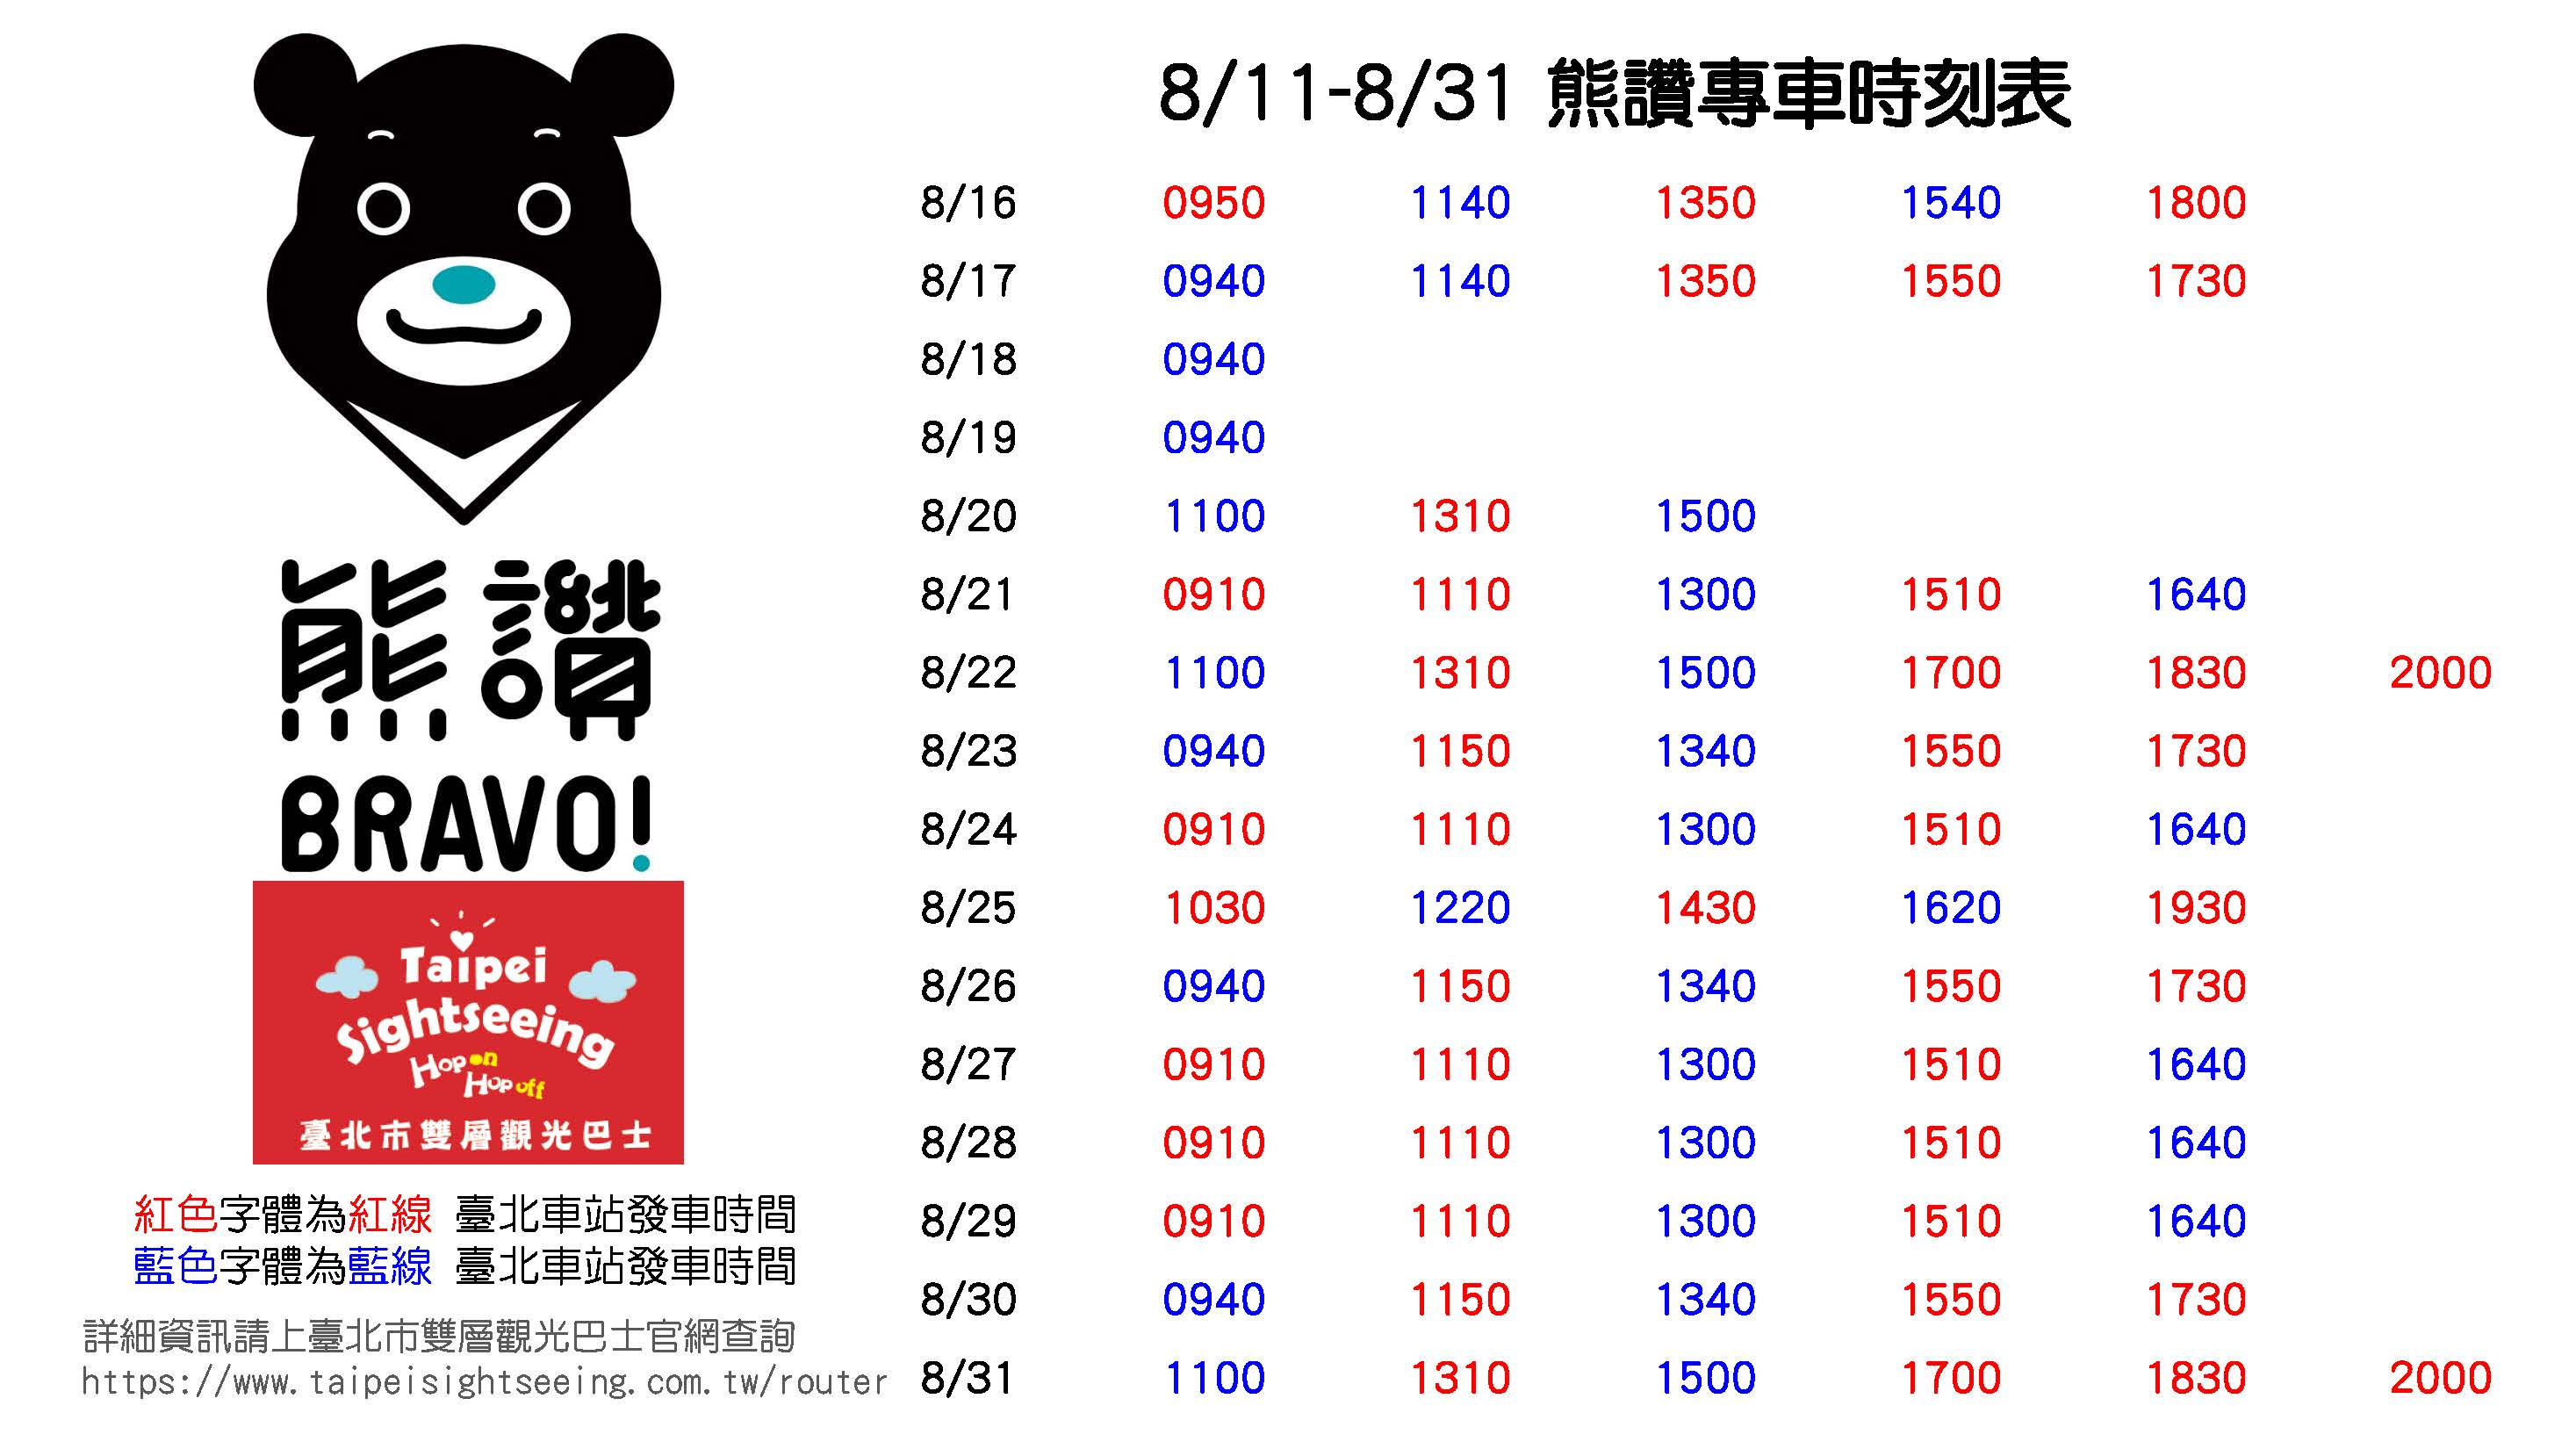 臺北市雙層觀巴「熊讚專車」時刻表